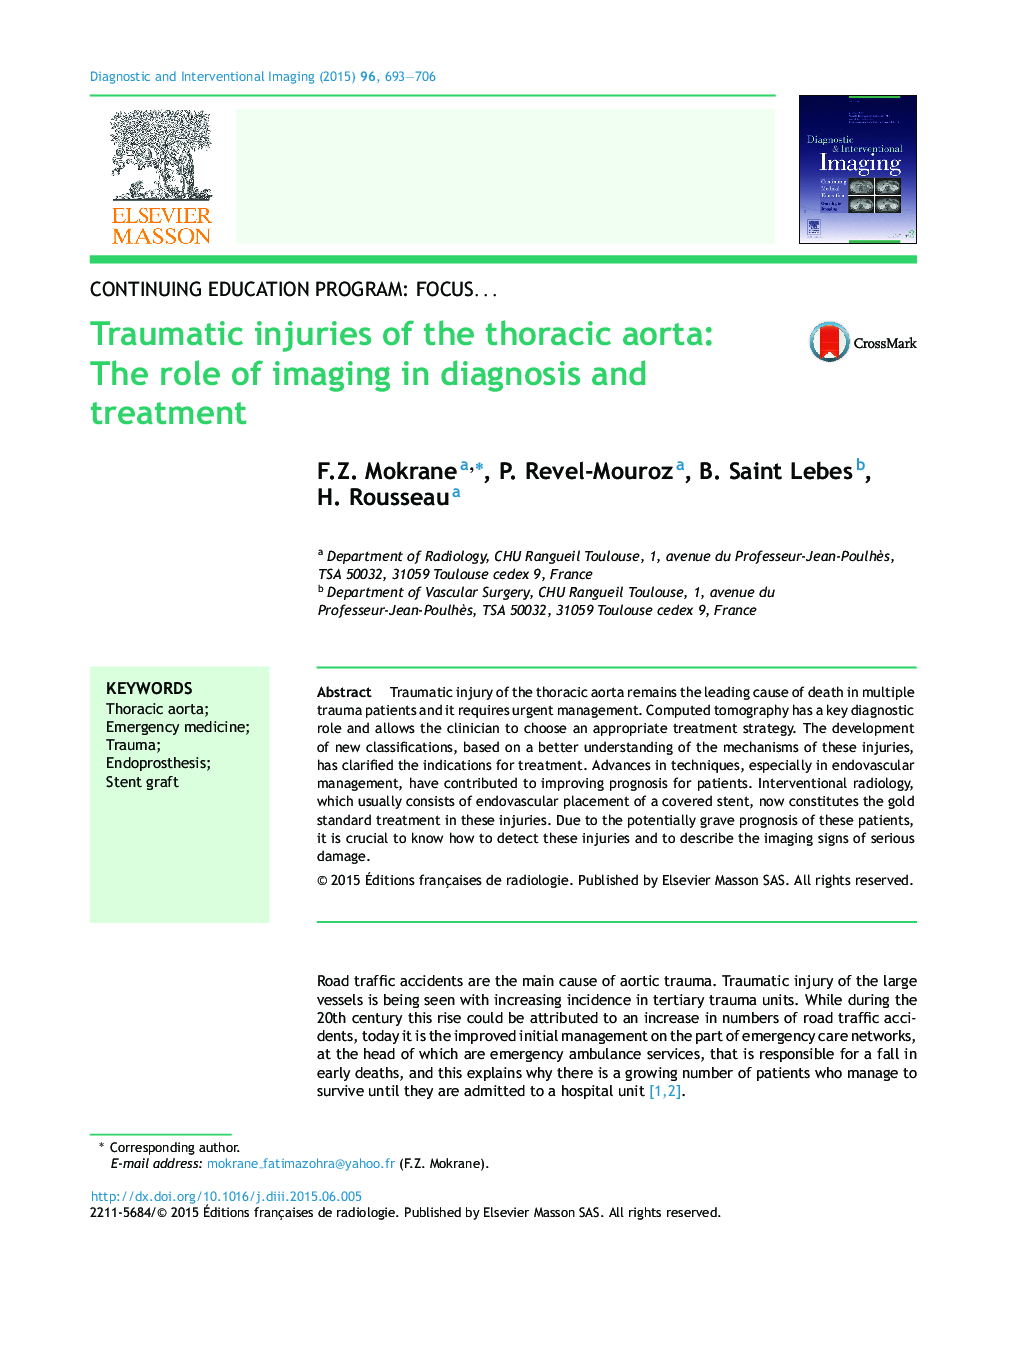 آسیب های تروماتیک آئورت قفسه سینه: نقش تصویربرداری در تشخیص و درمان 